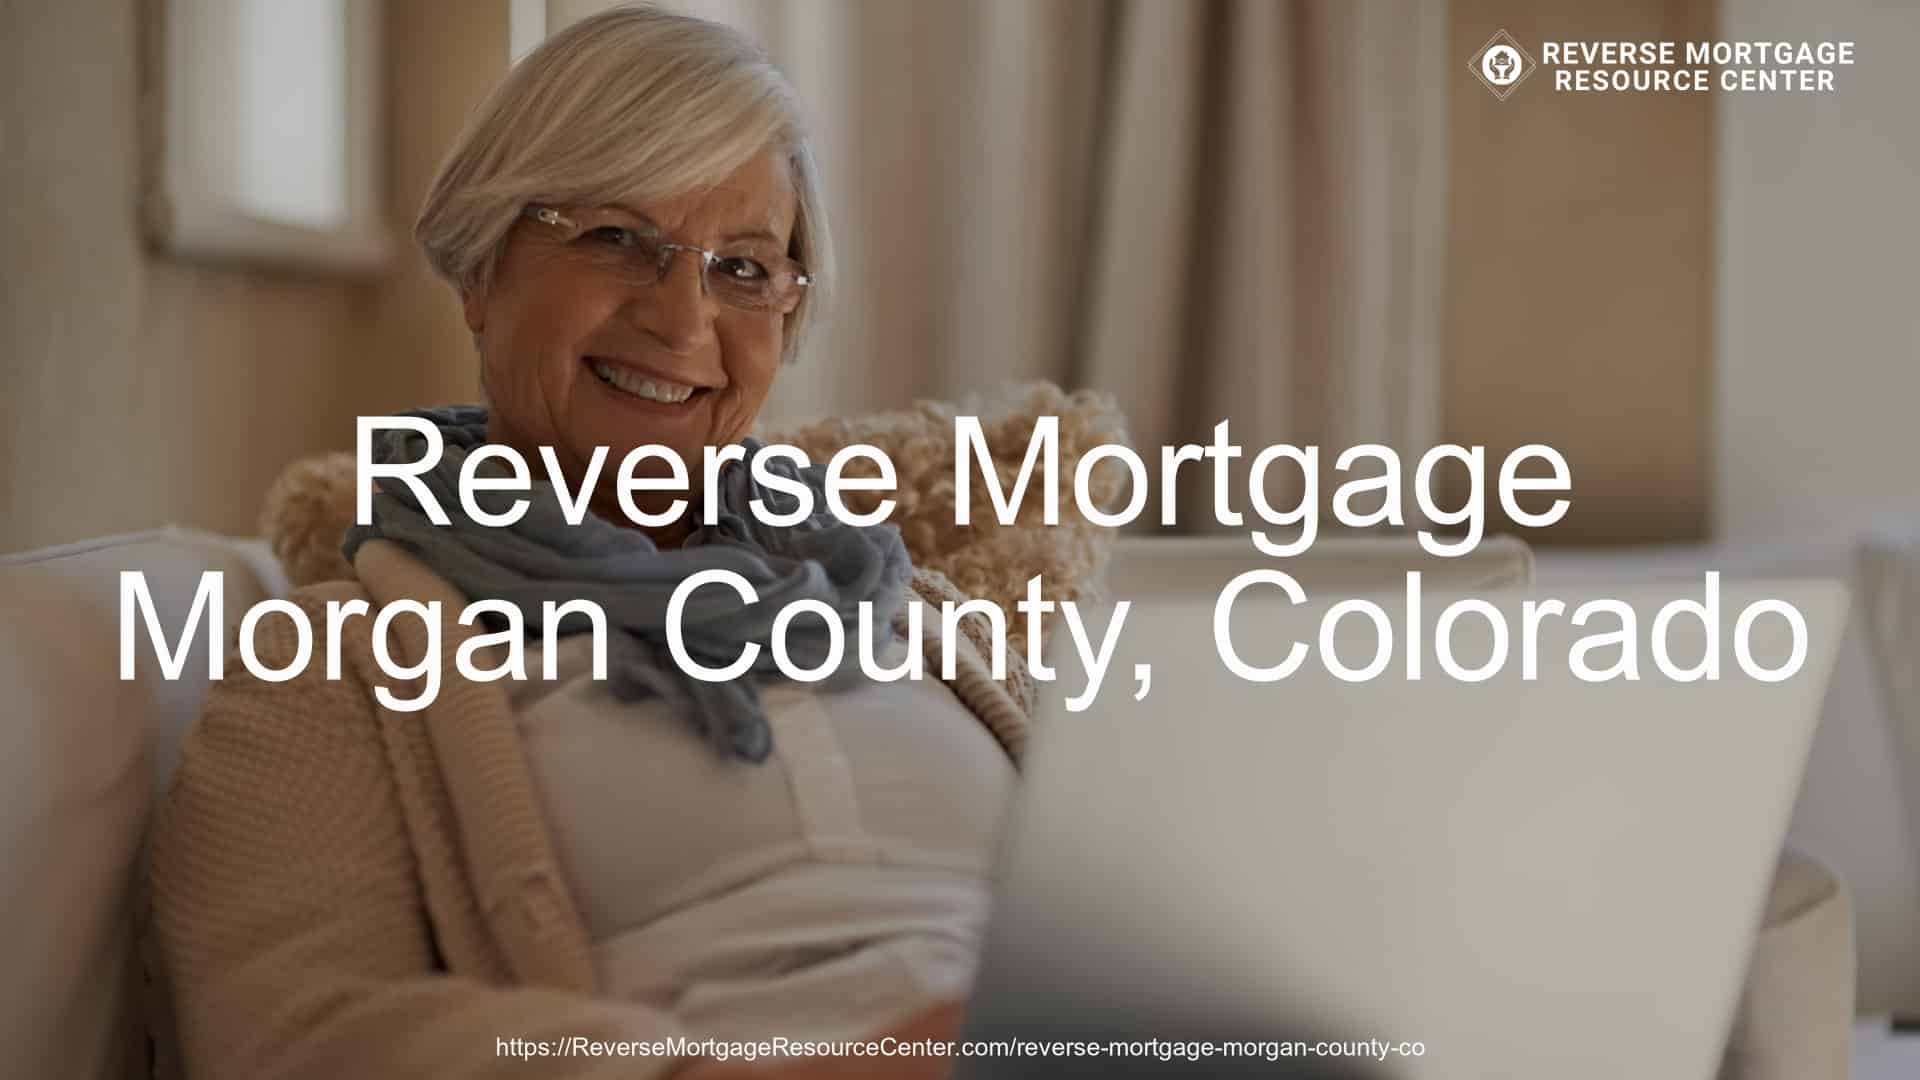 Reverse Mortgage Loans in Morgan County Colorado